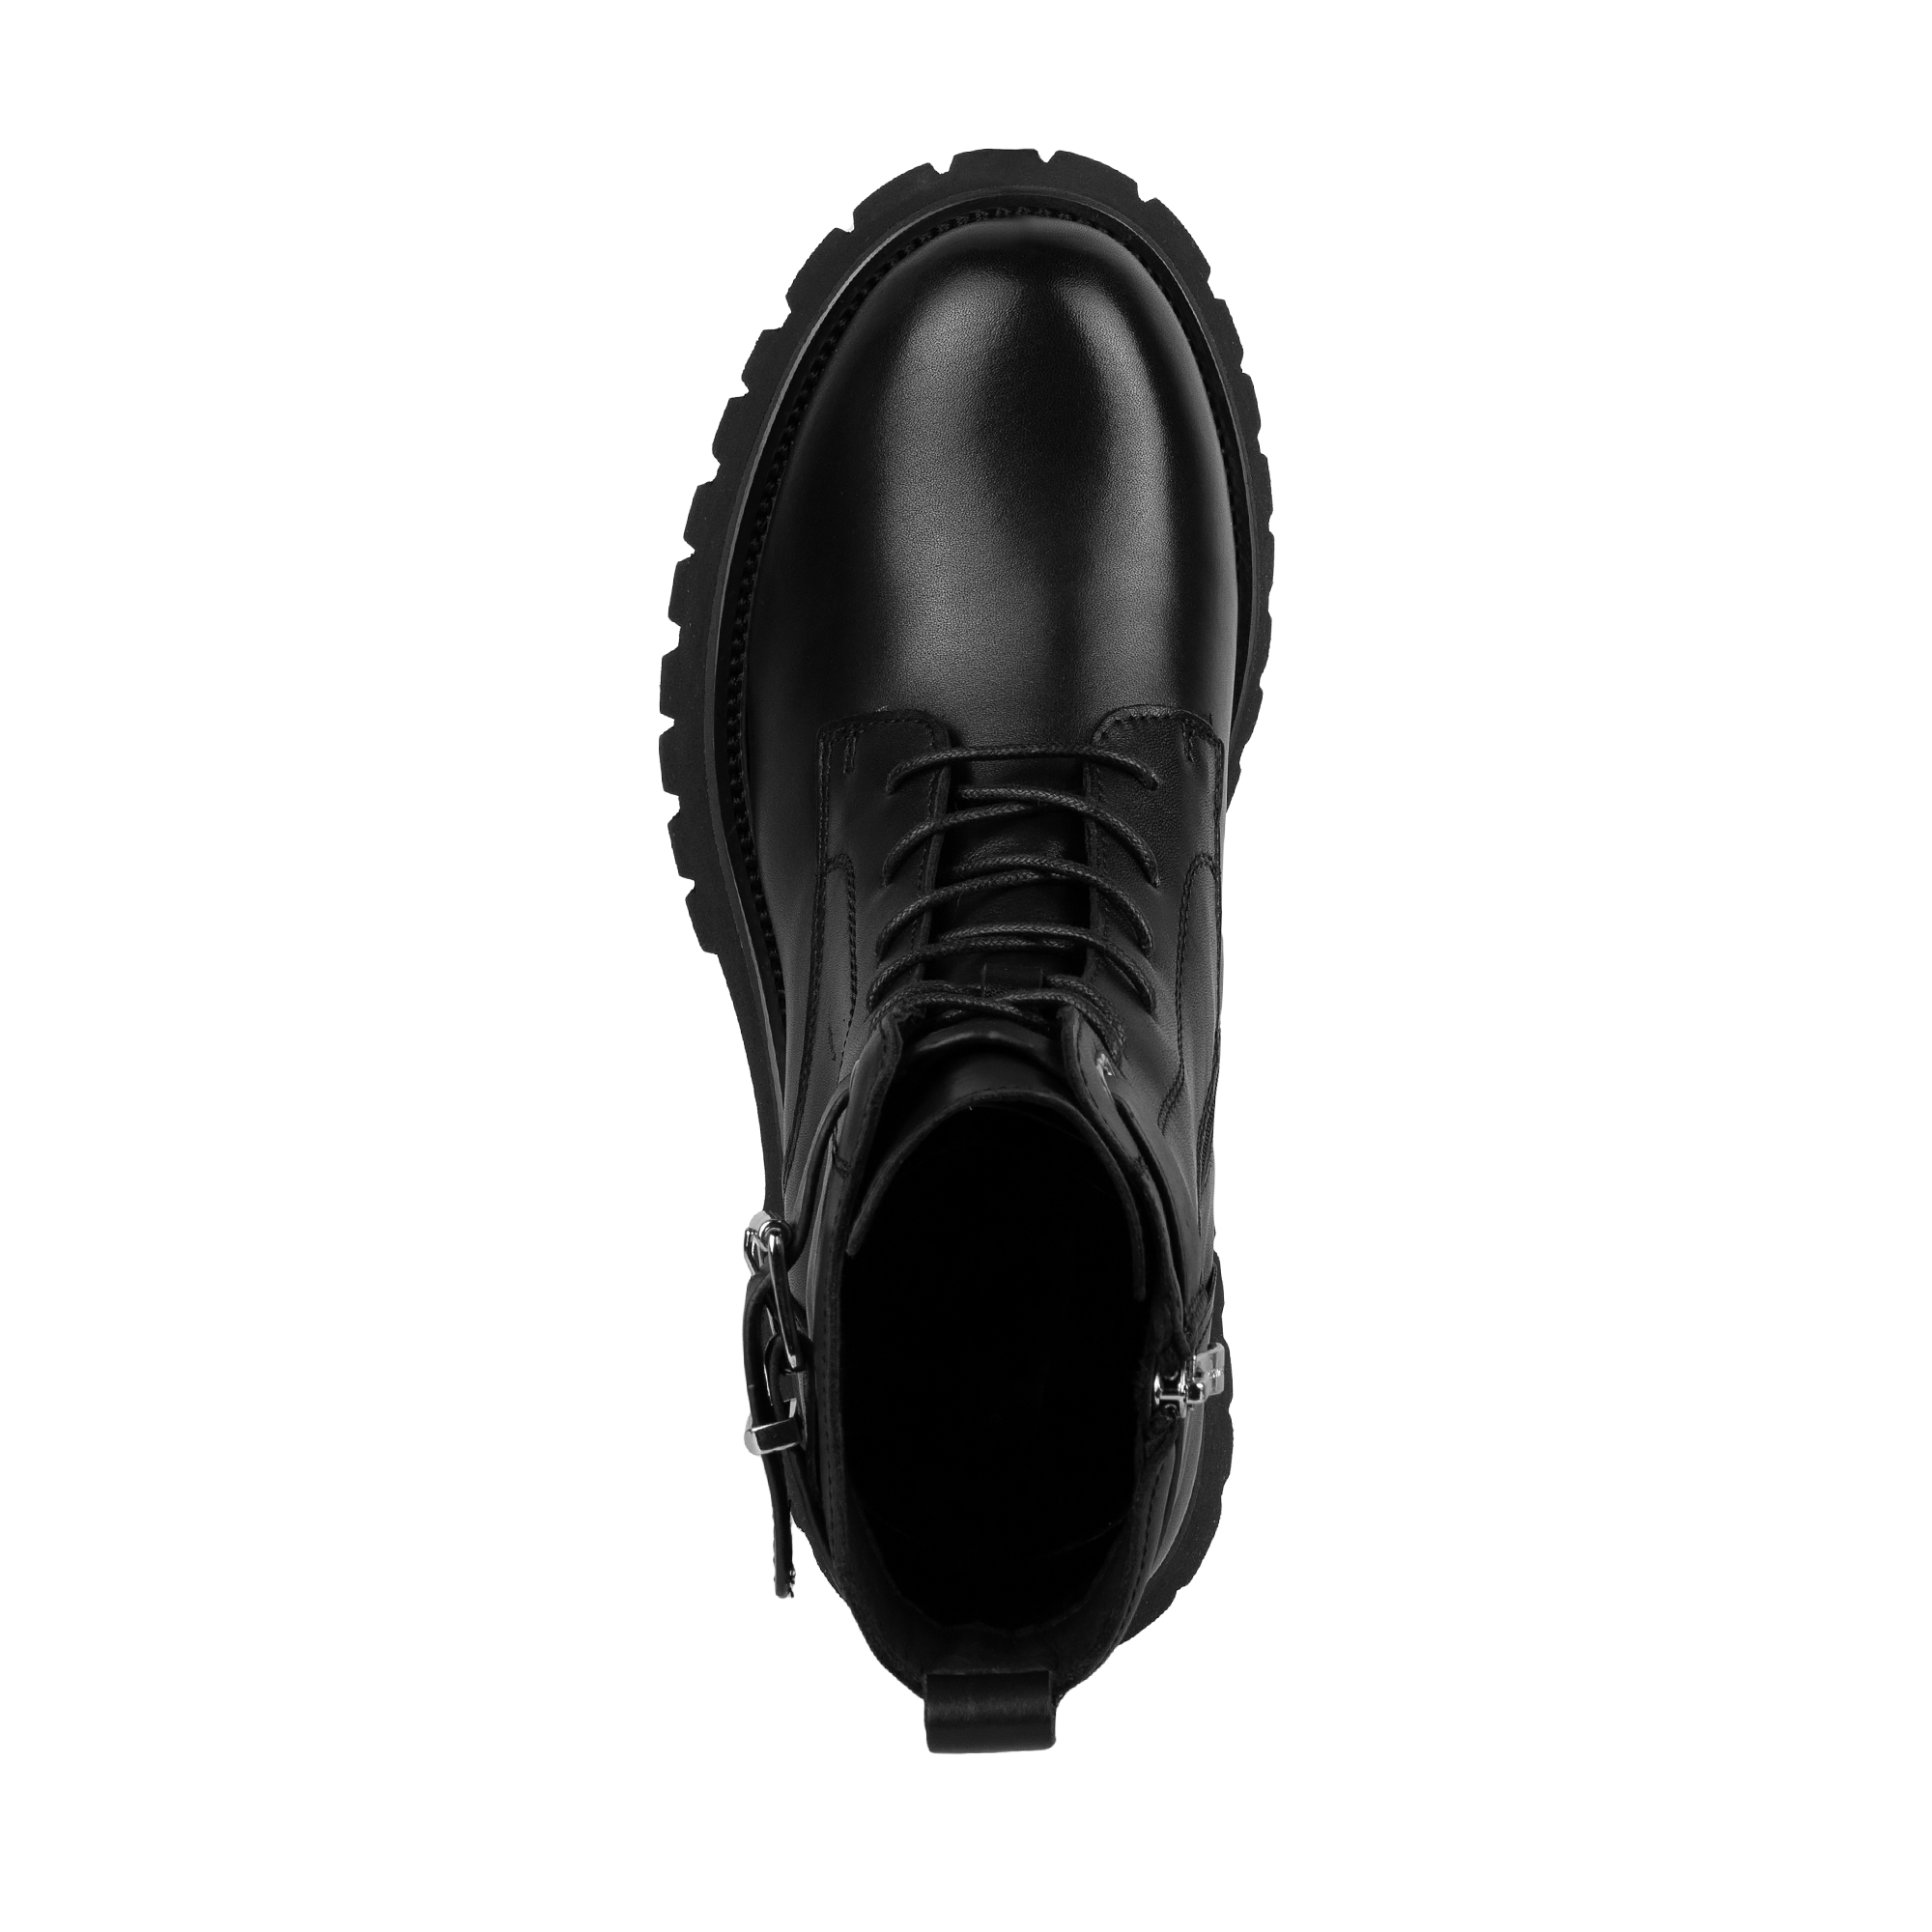 Ботинки Thomas Munz 058-3406A-2102, цвет черный, размер 36 - фото 5